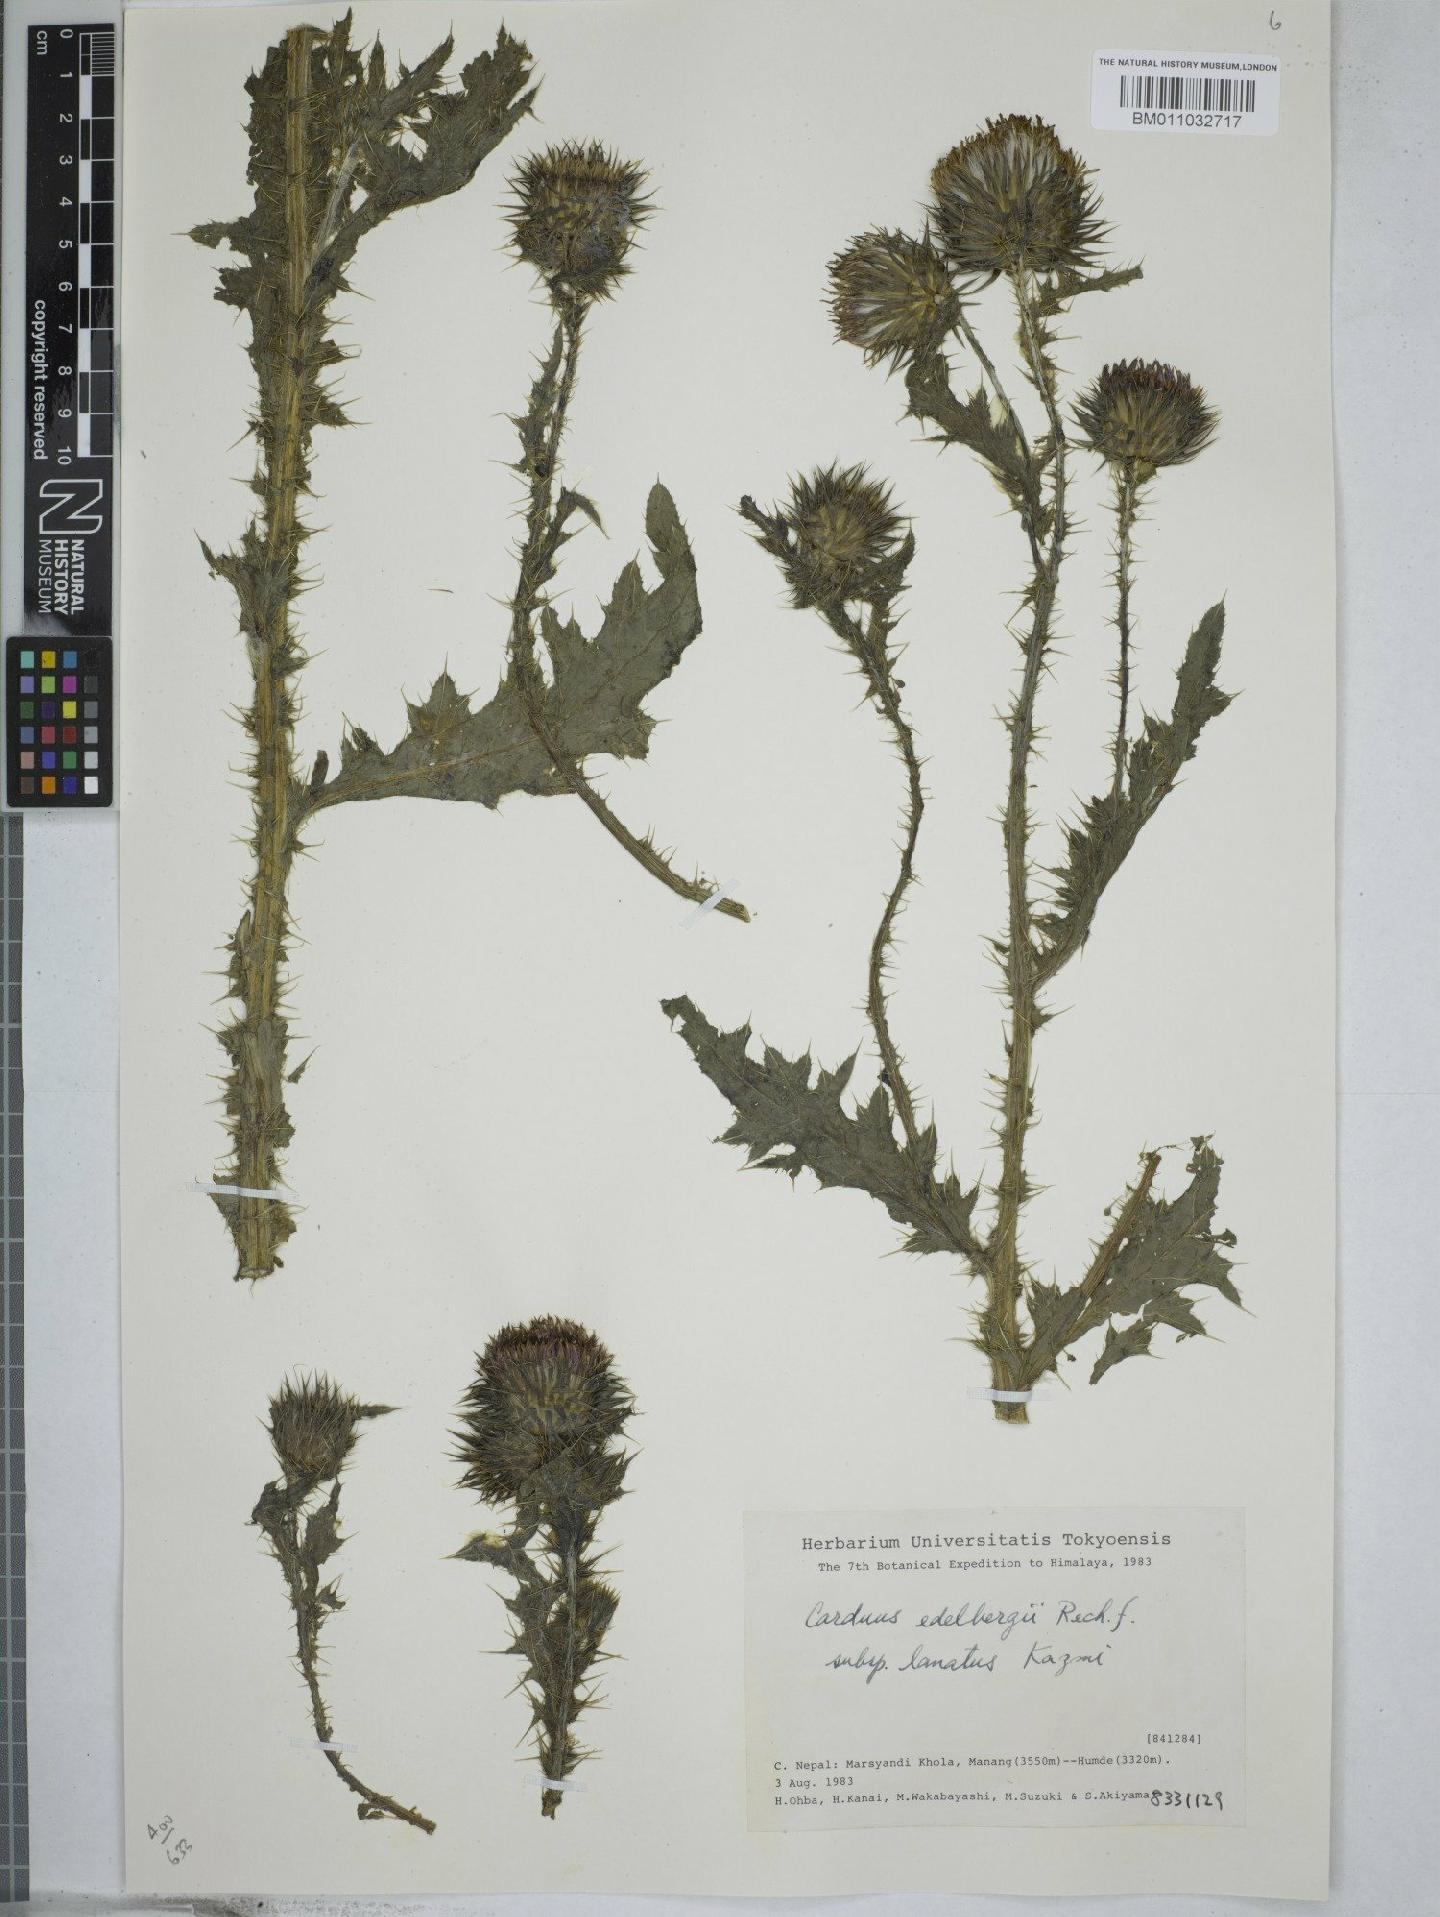 To NHMUK collection (Carduus edelbergii subsp. lanatus Kazmi; NHMUK:ecatalogue:9156351)